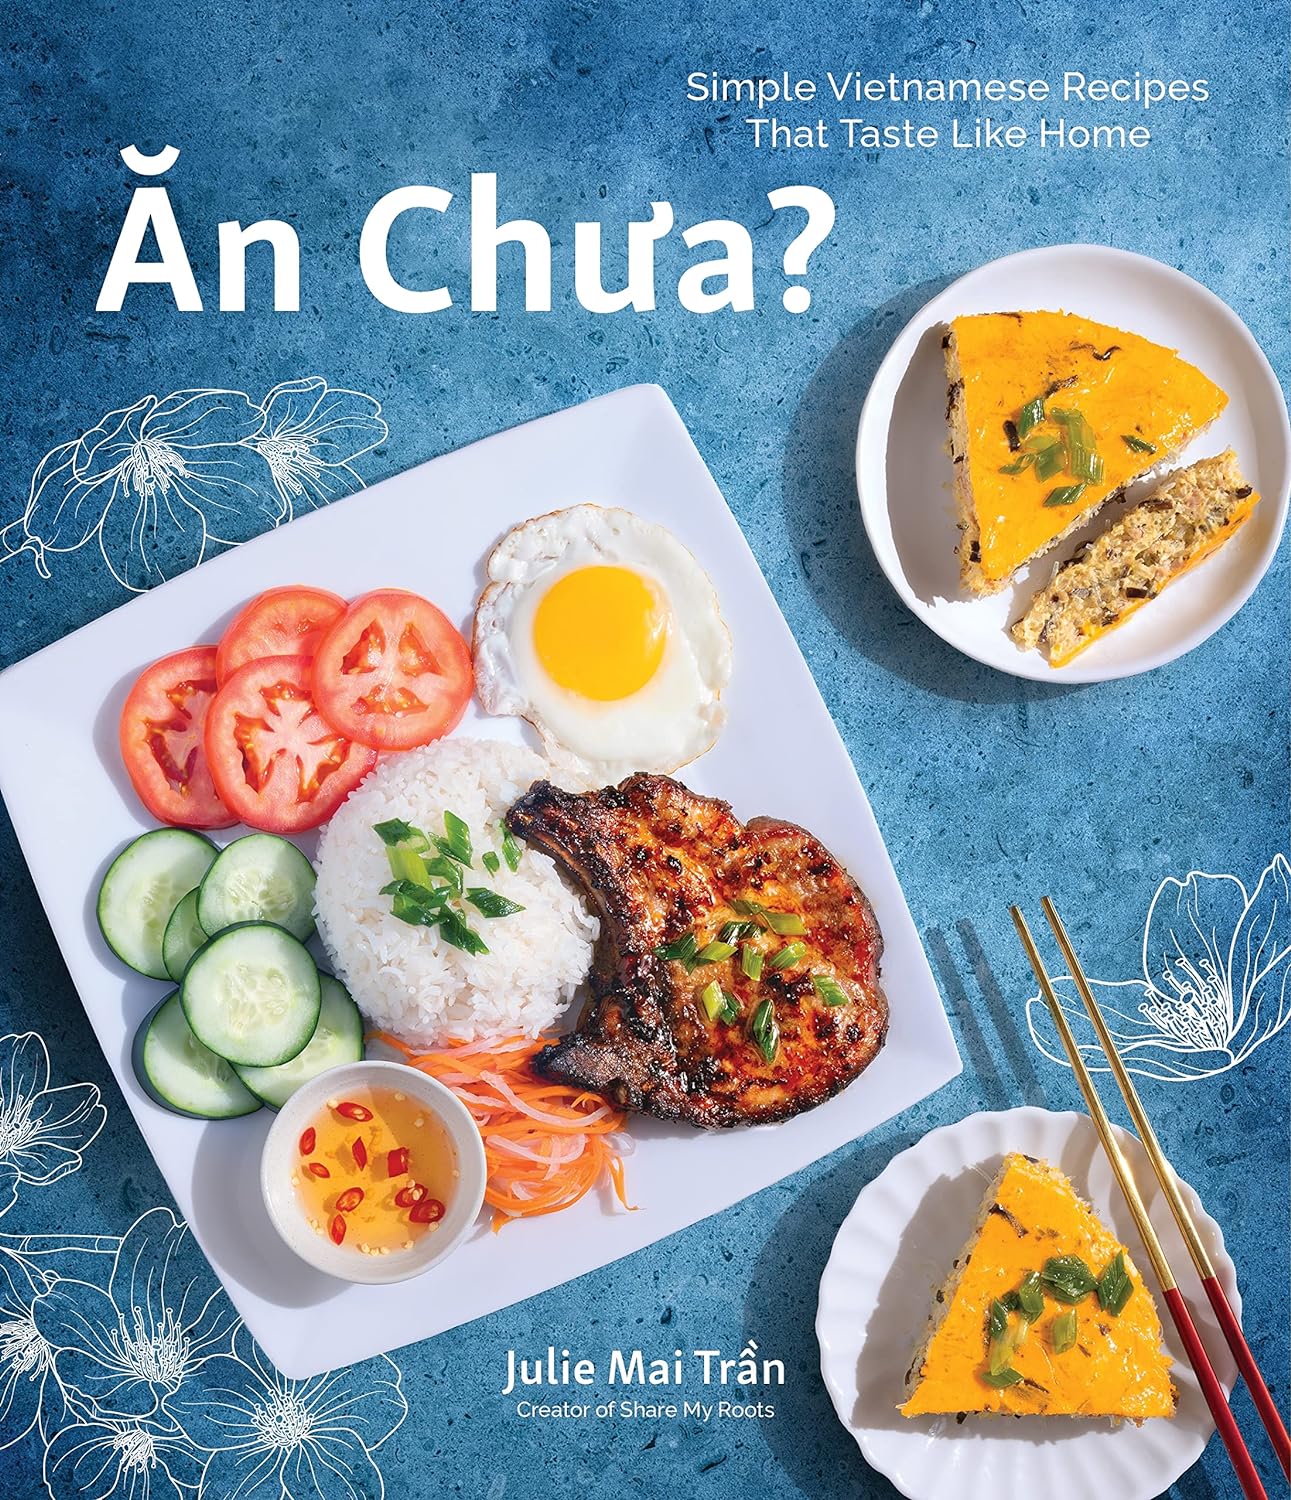 An Chua: Simple Vietnamese Recipes That Taste Like Home (Julie Mai Tran)